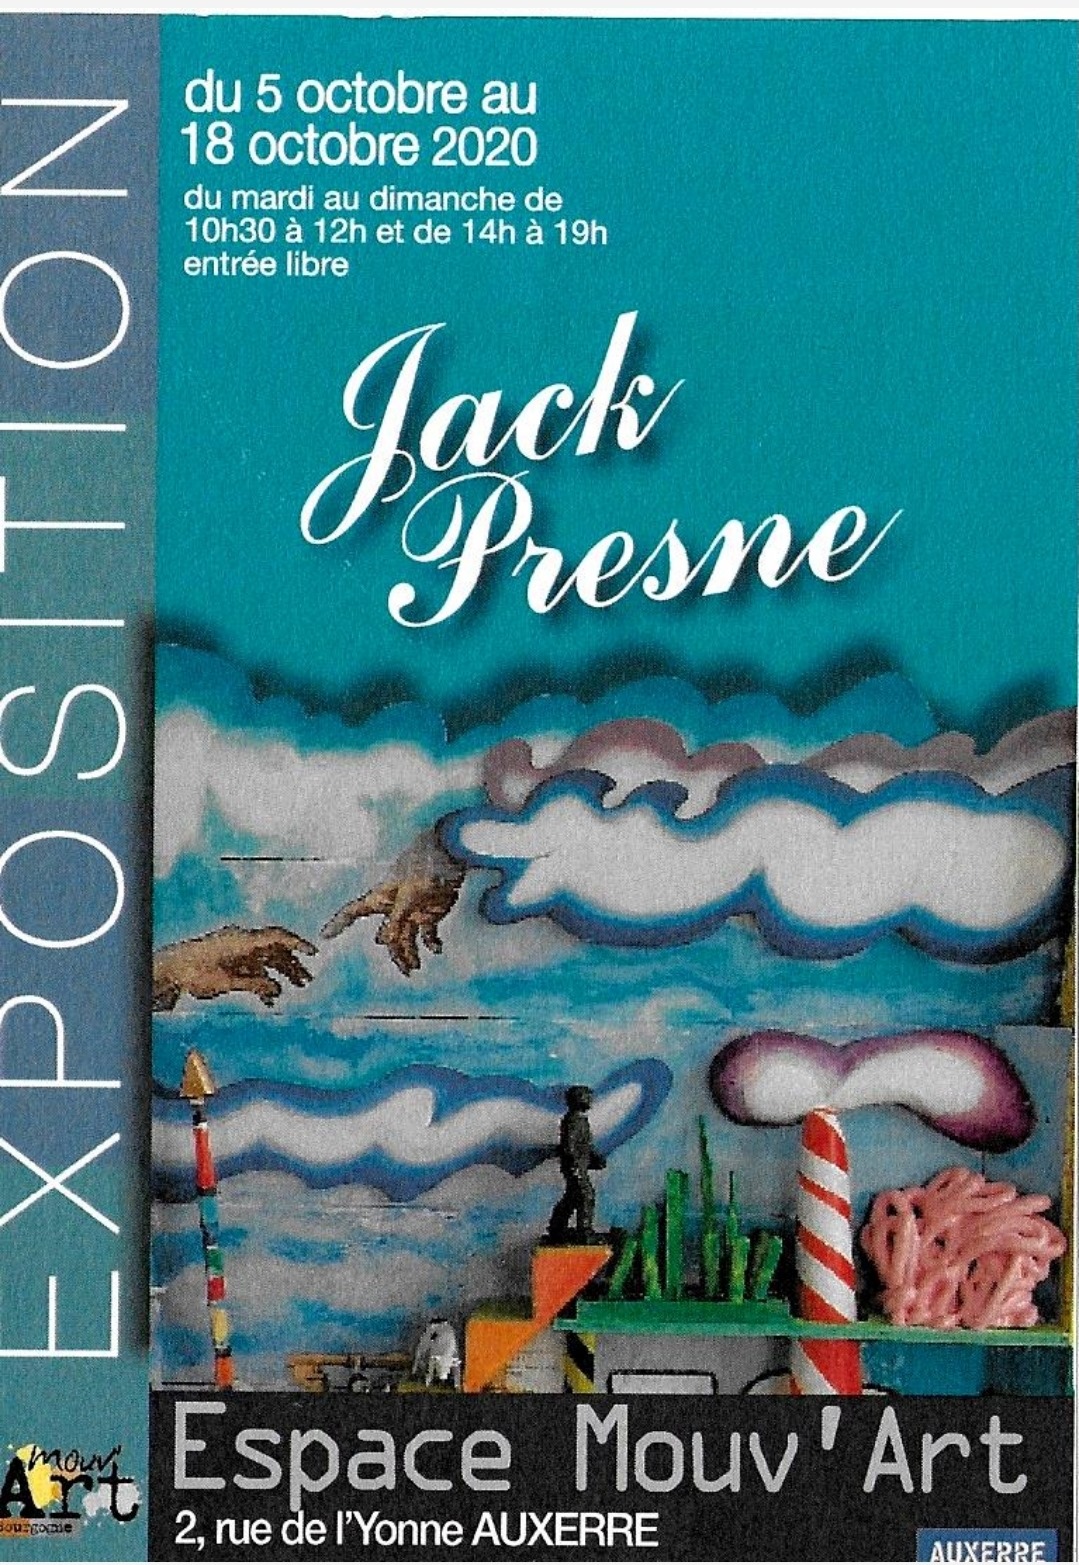 Jack Presne